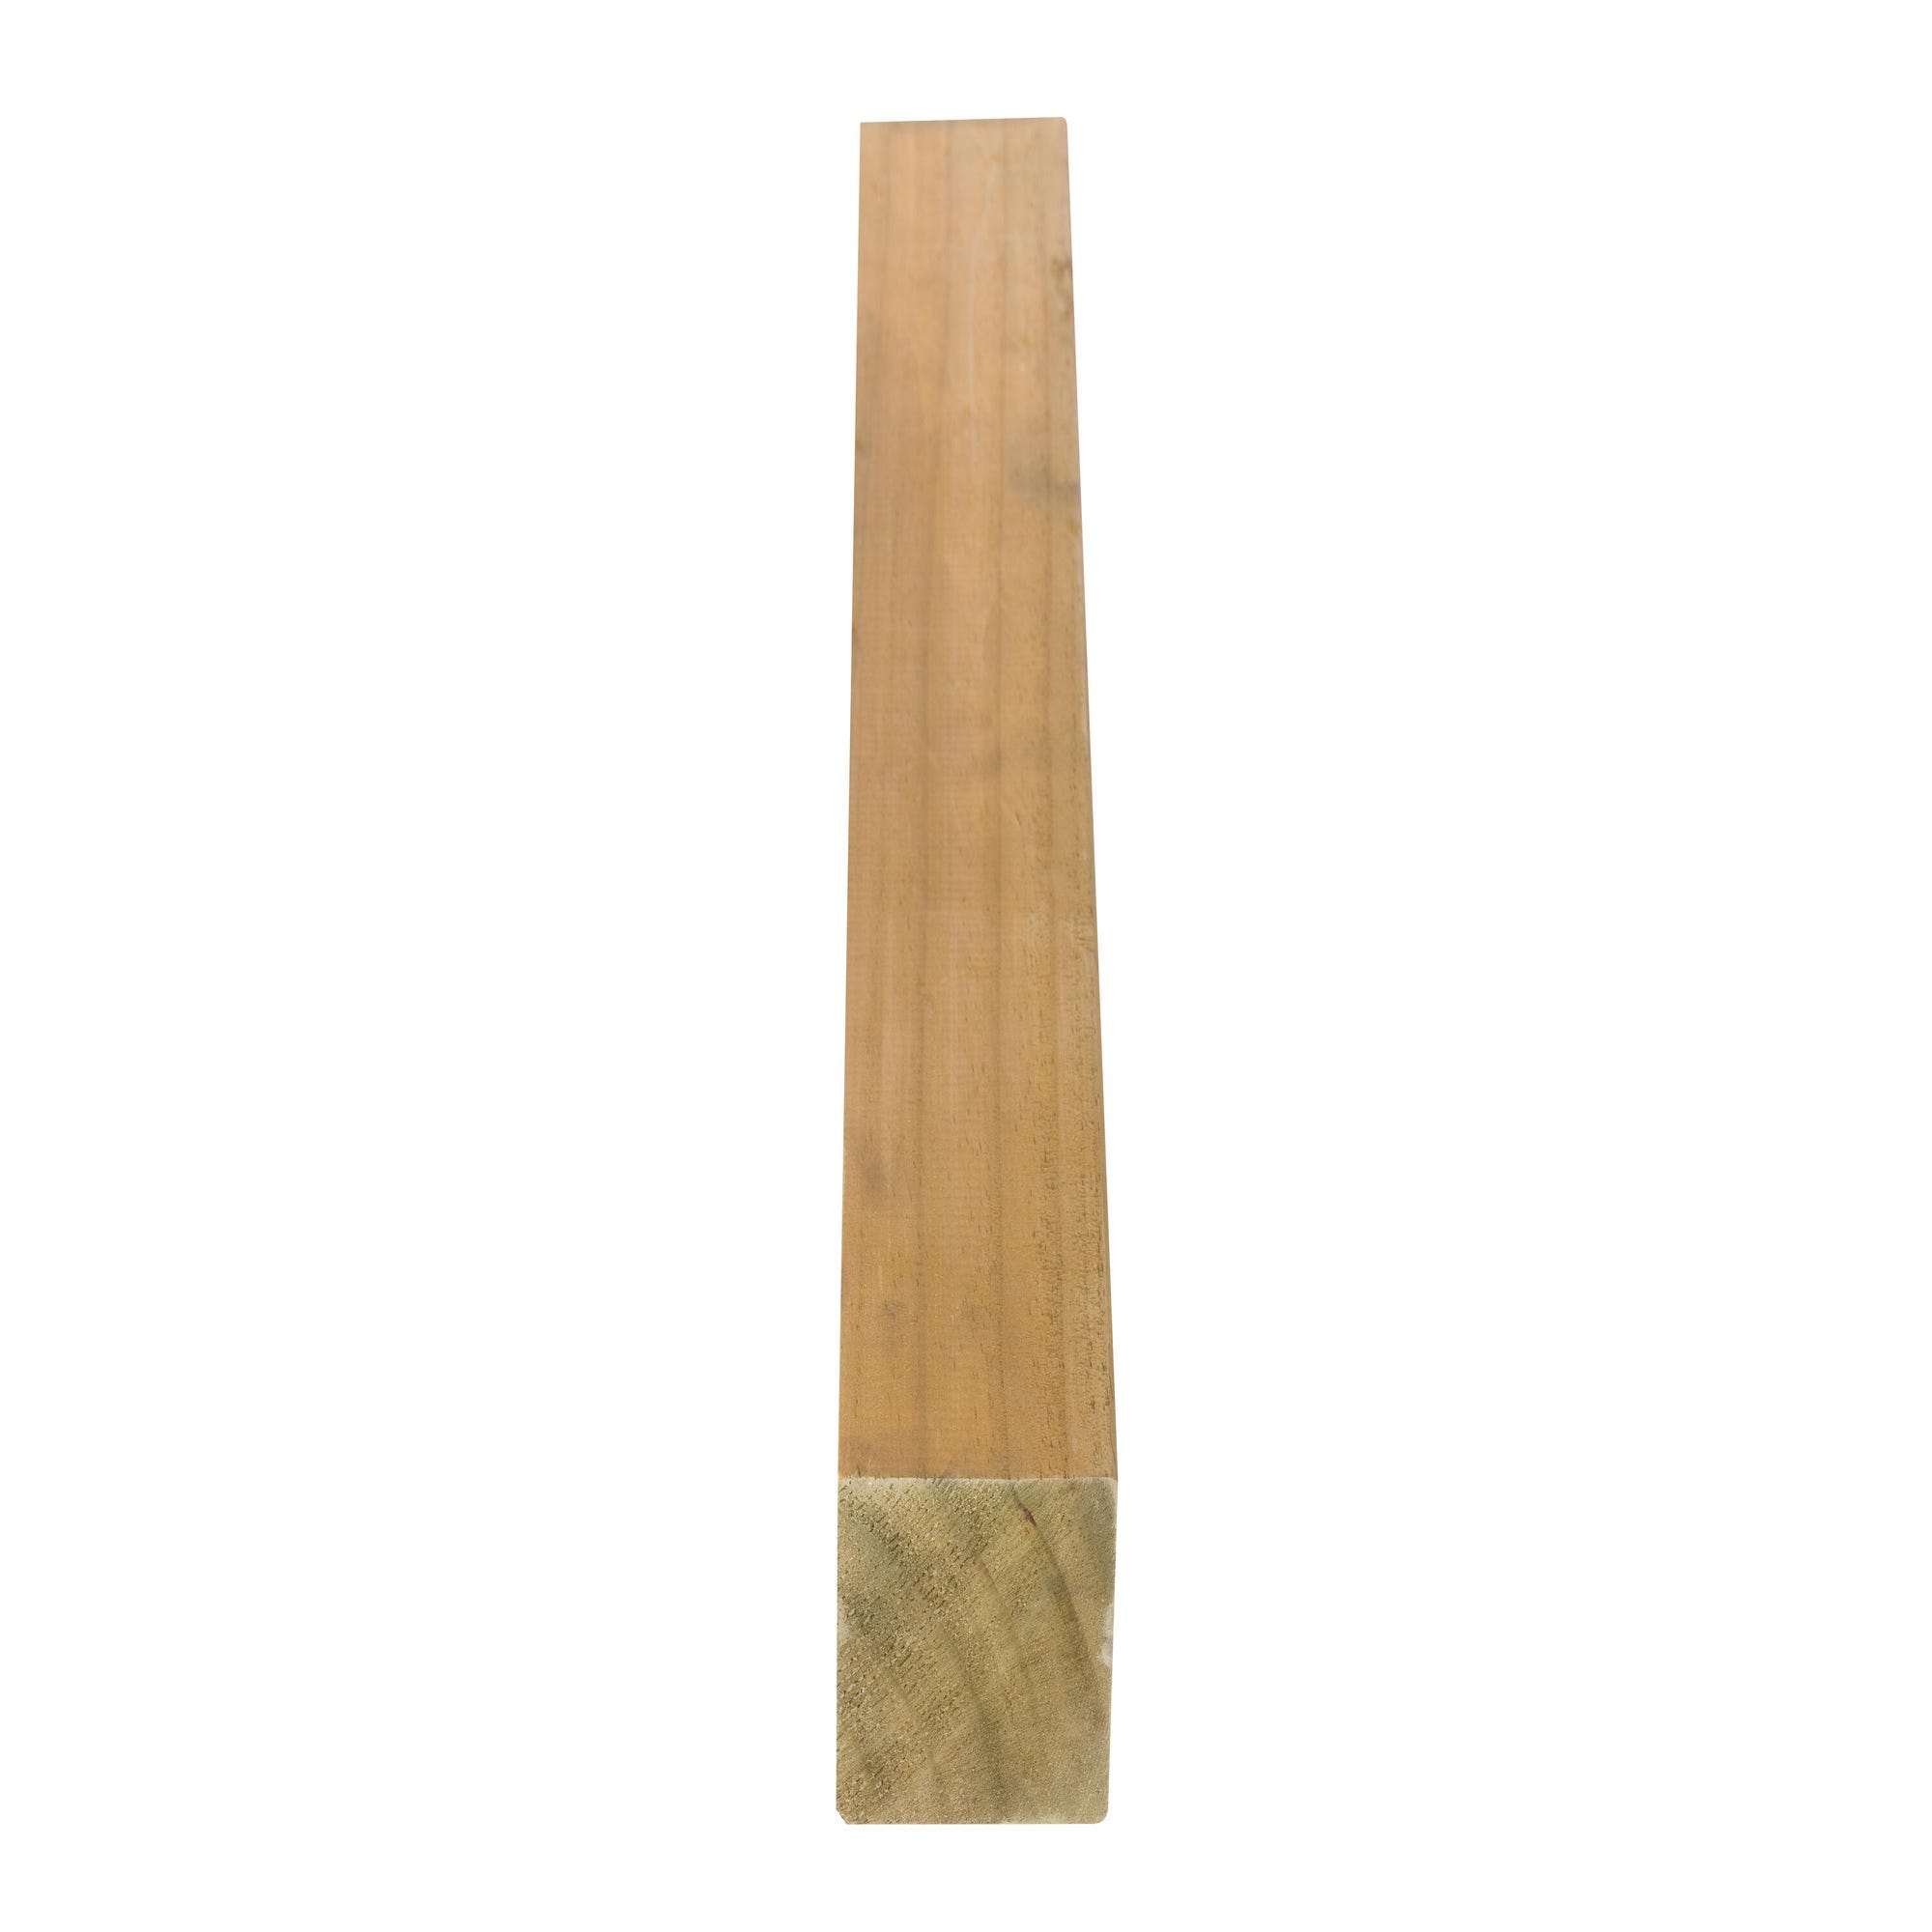 Poste de madera cuadrado, 7x7x120 cm.